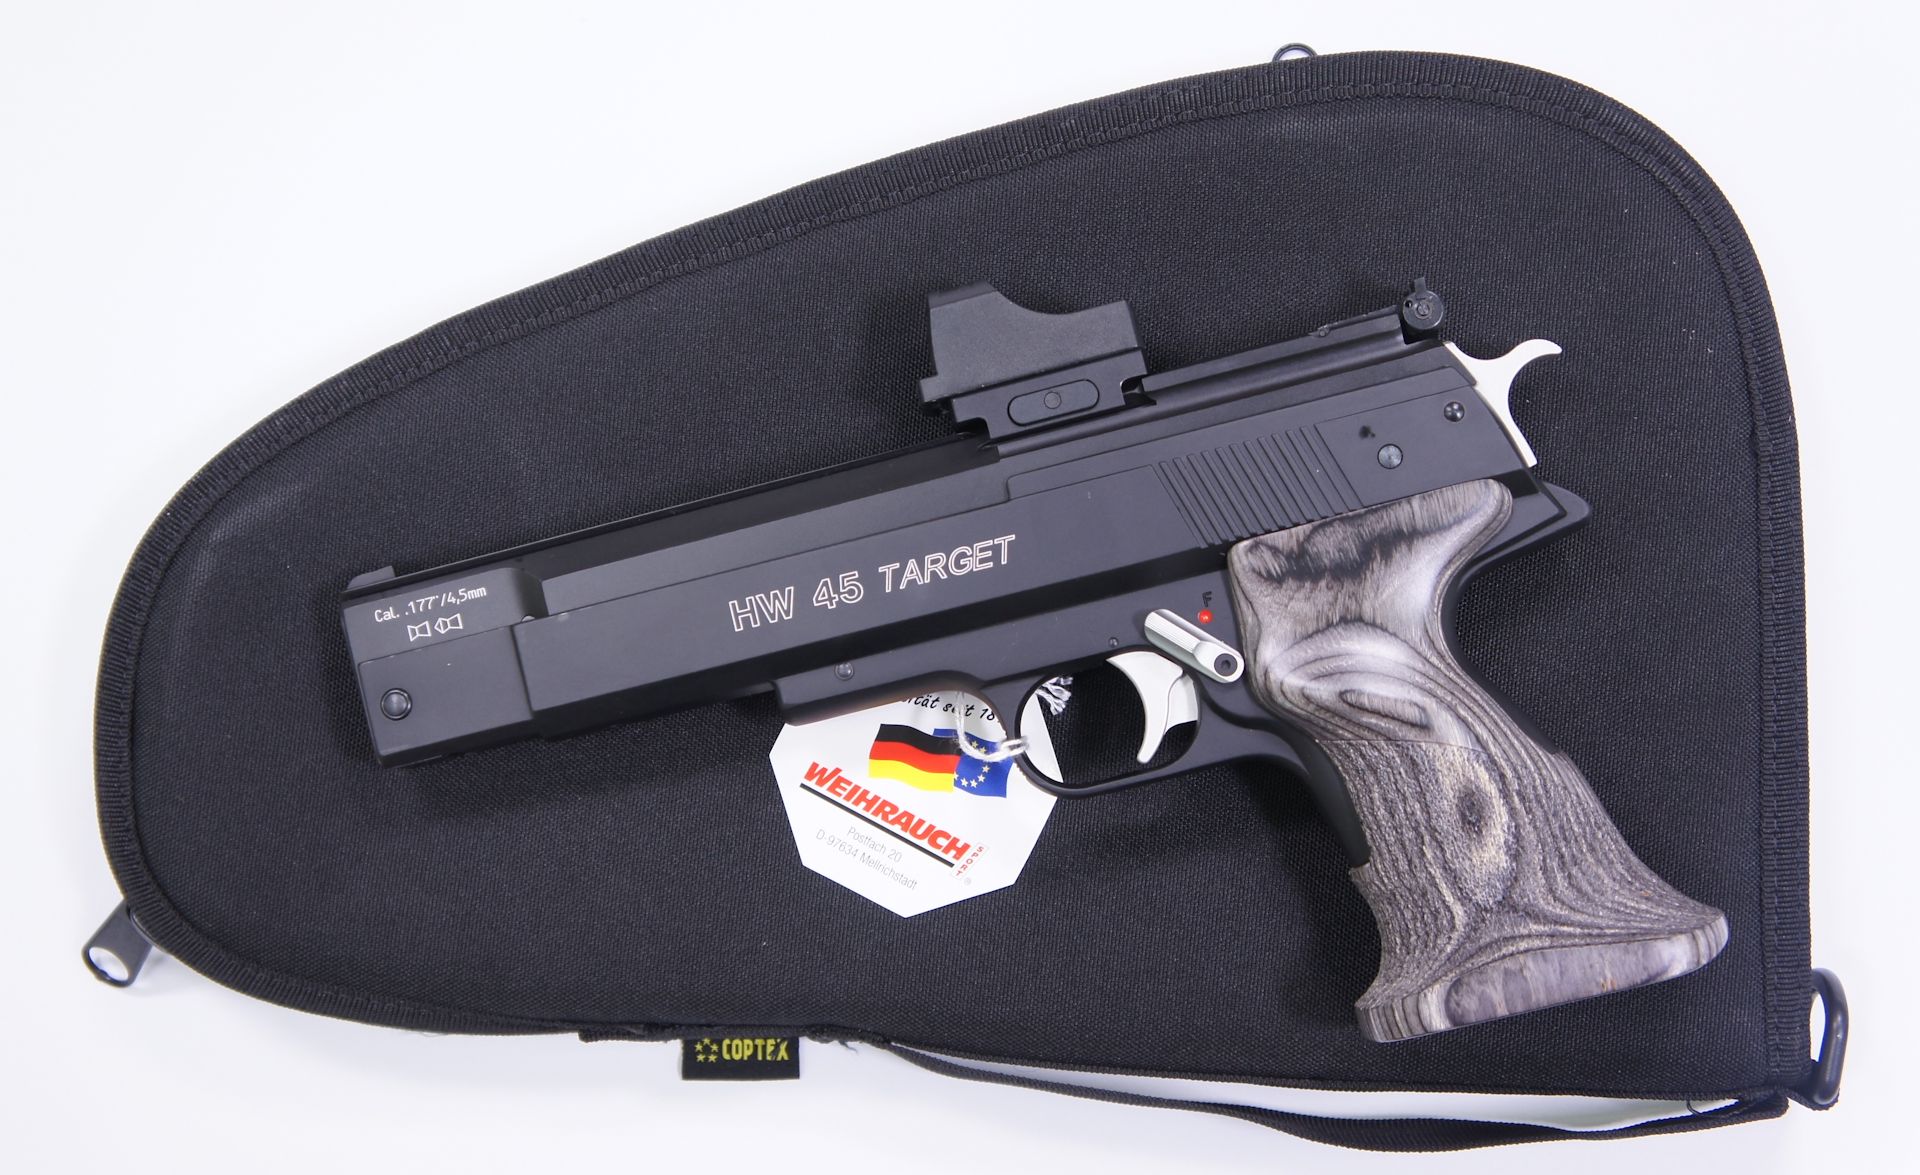 Als Zubehör für die HW 45 SilverStar Target RTU mit aufgesetzter Optik kann ich Ihnen <a href=1340088.htm> solche praktische Pistolentasche </a> für Aufbewahrung und Transport anbieten. Die Tasche wäre mittels Vorhängeschloss abschließbar.